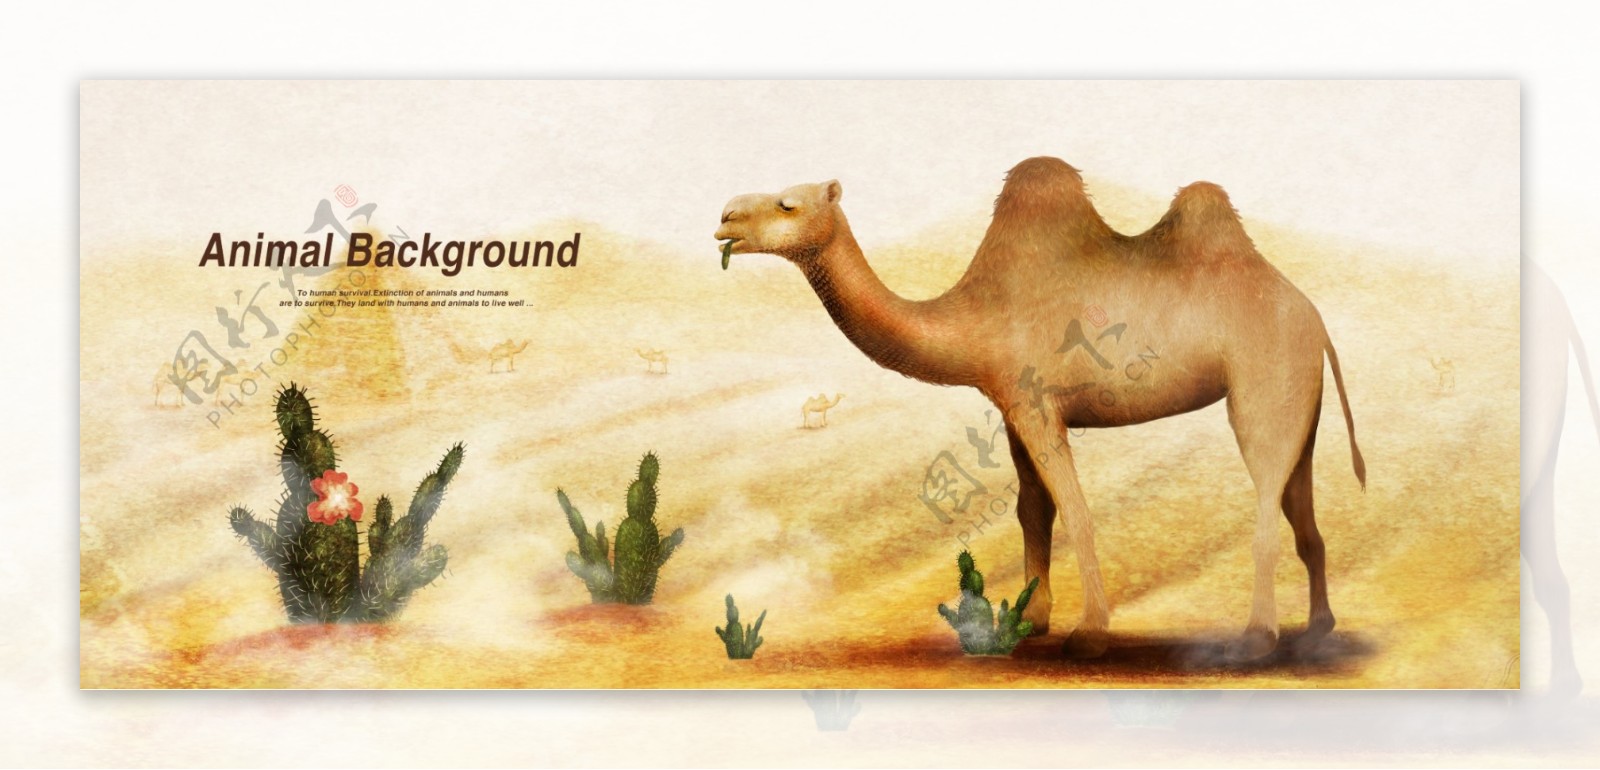 彩铅画效果动物分层背景骆驼